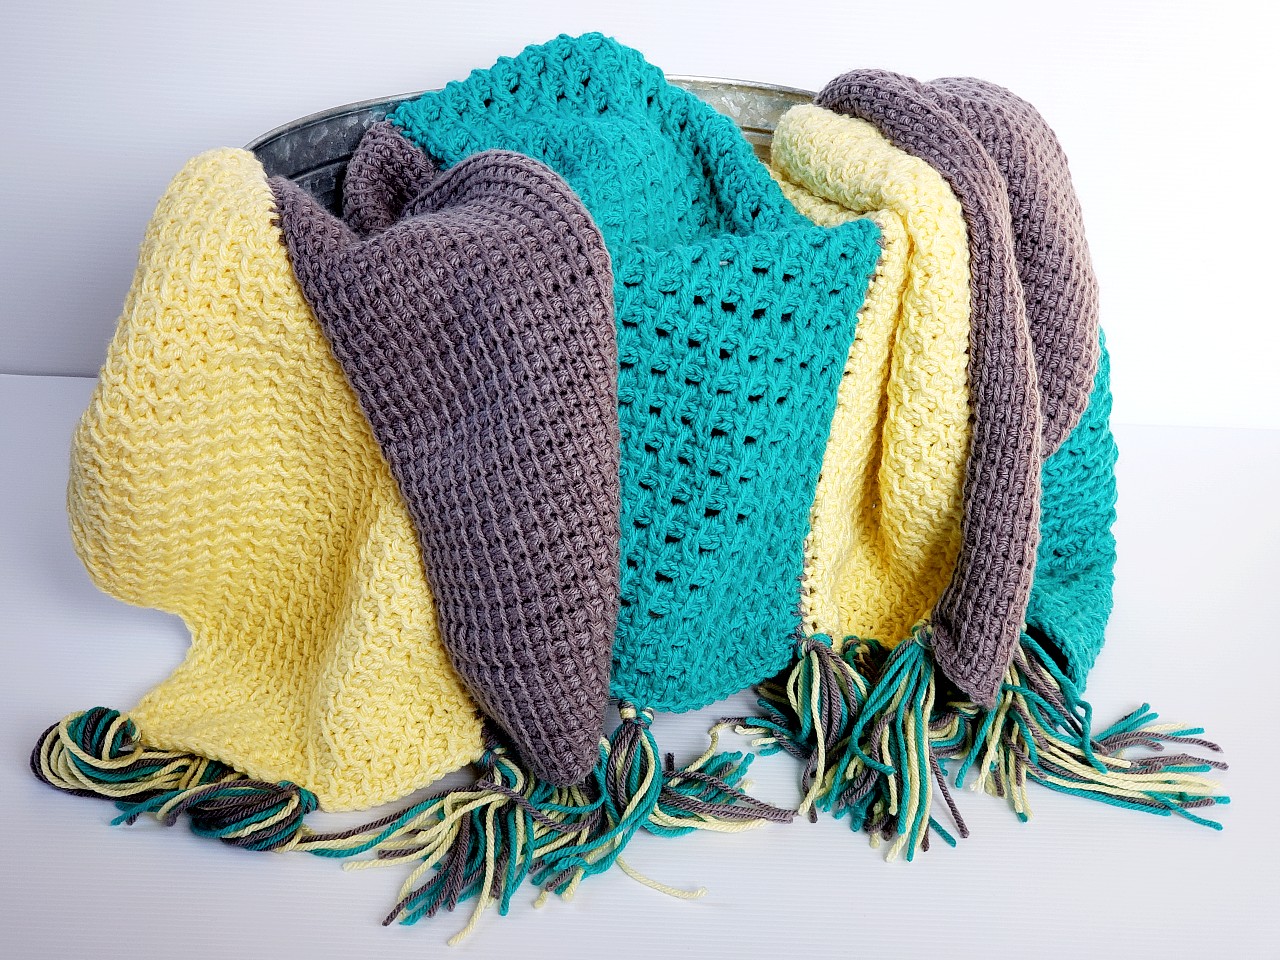 Sedge Stitch Crochet Shawl: Cozy and Stylish - Affinity For Yarn